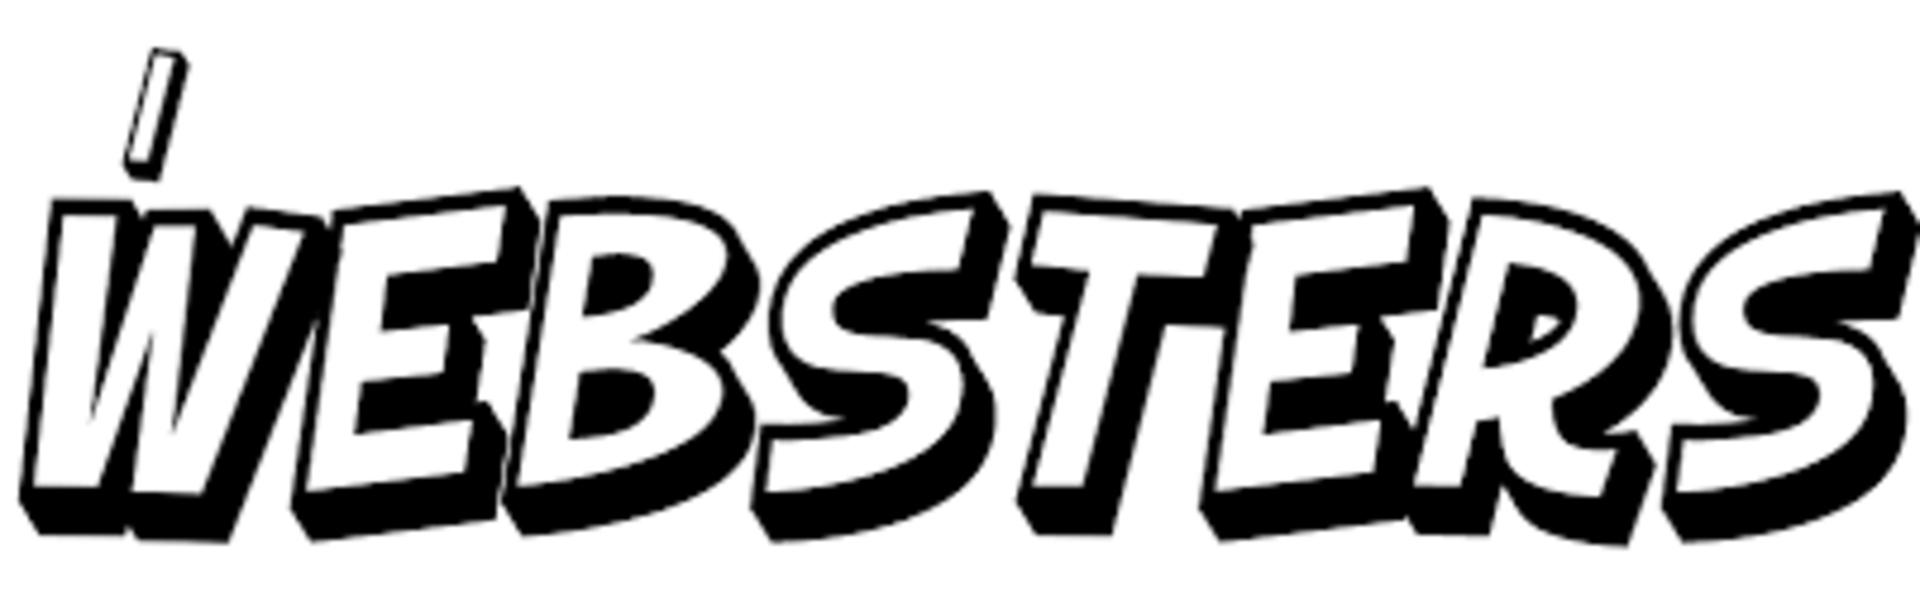 Websters logotips (itāliešu valodā)